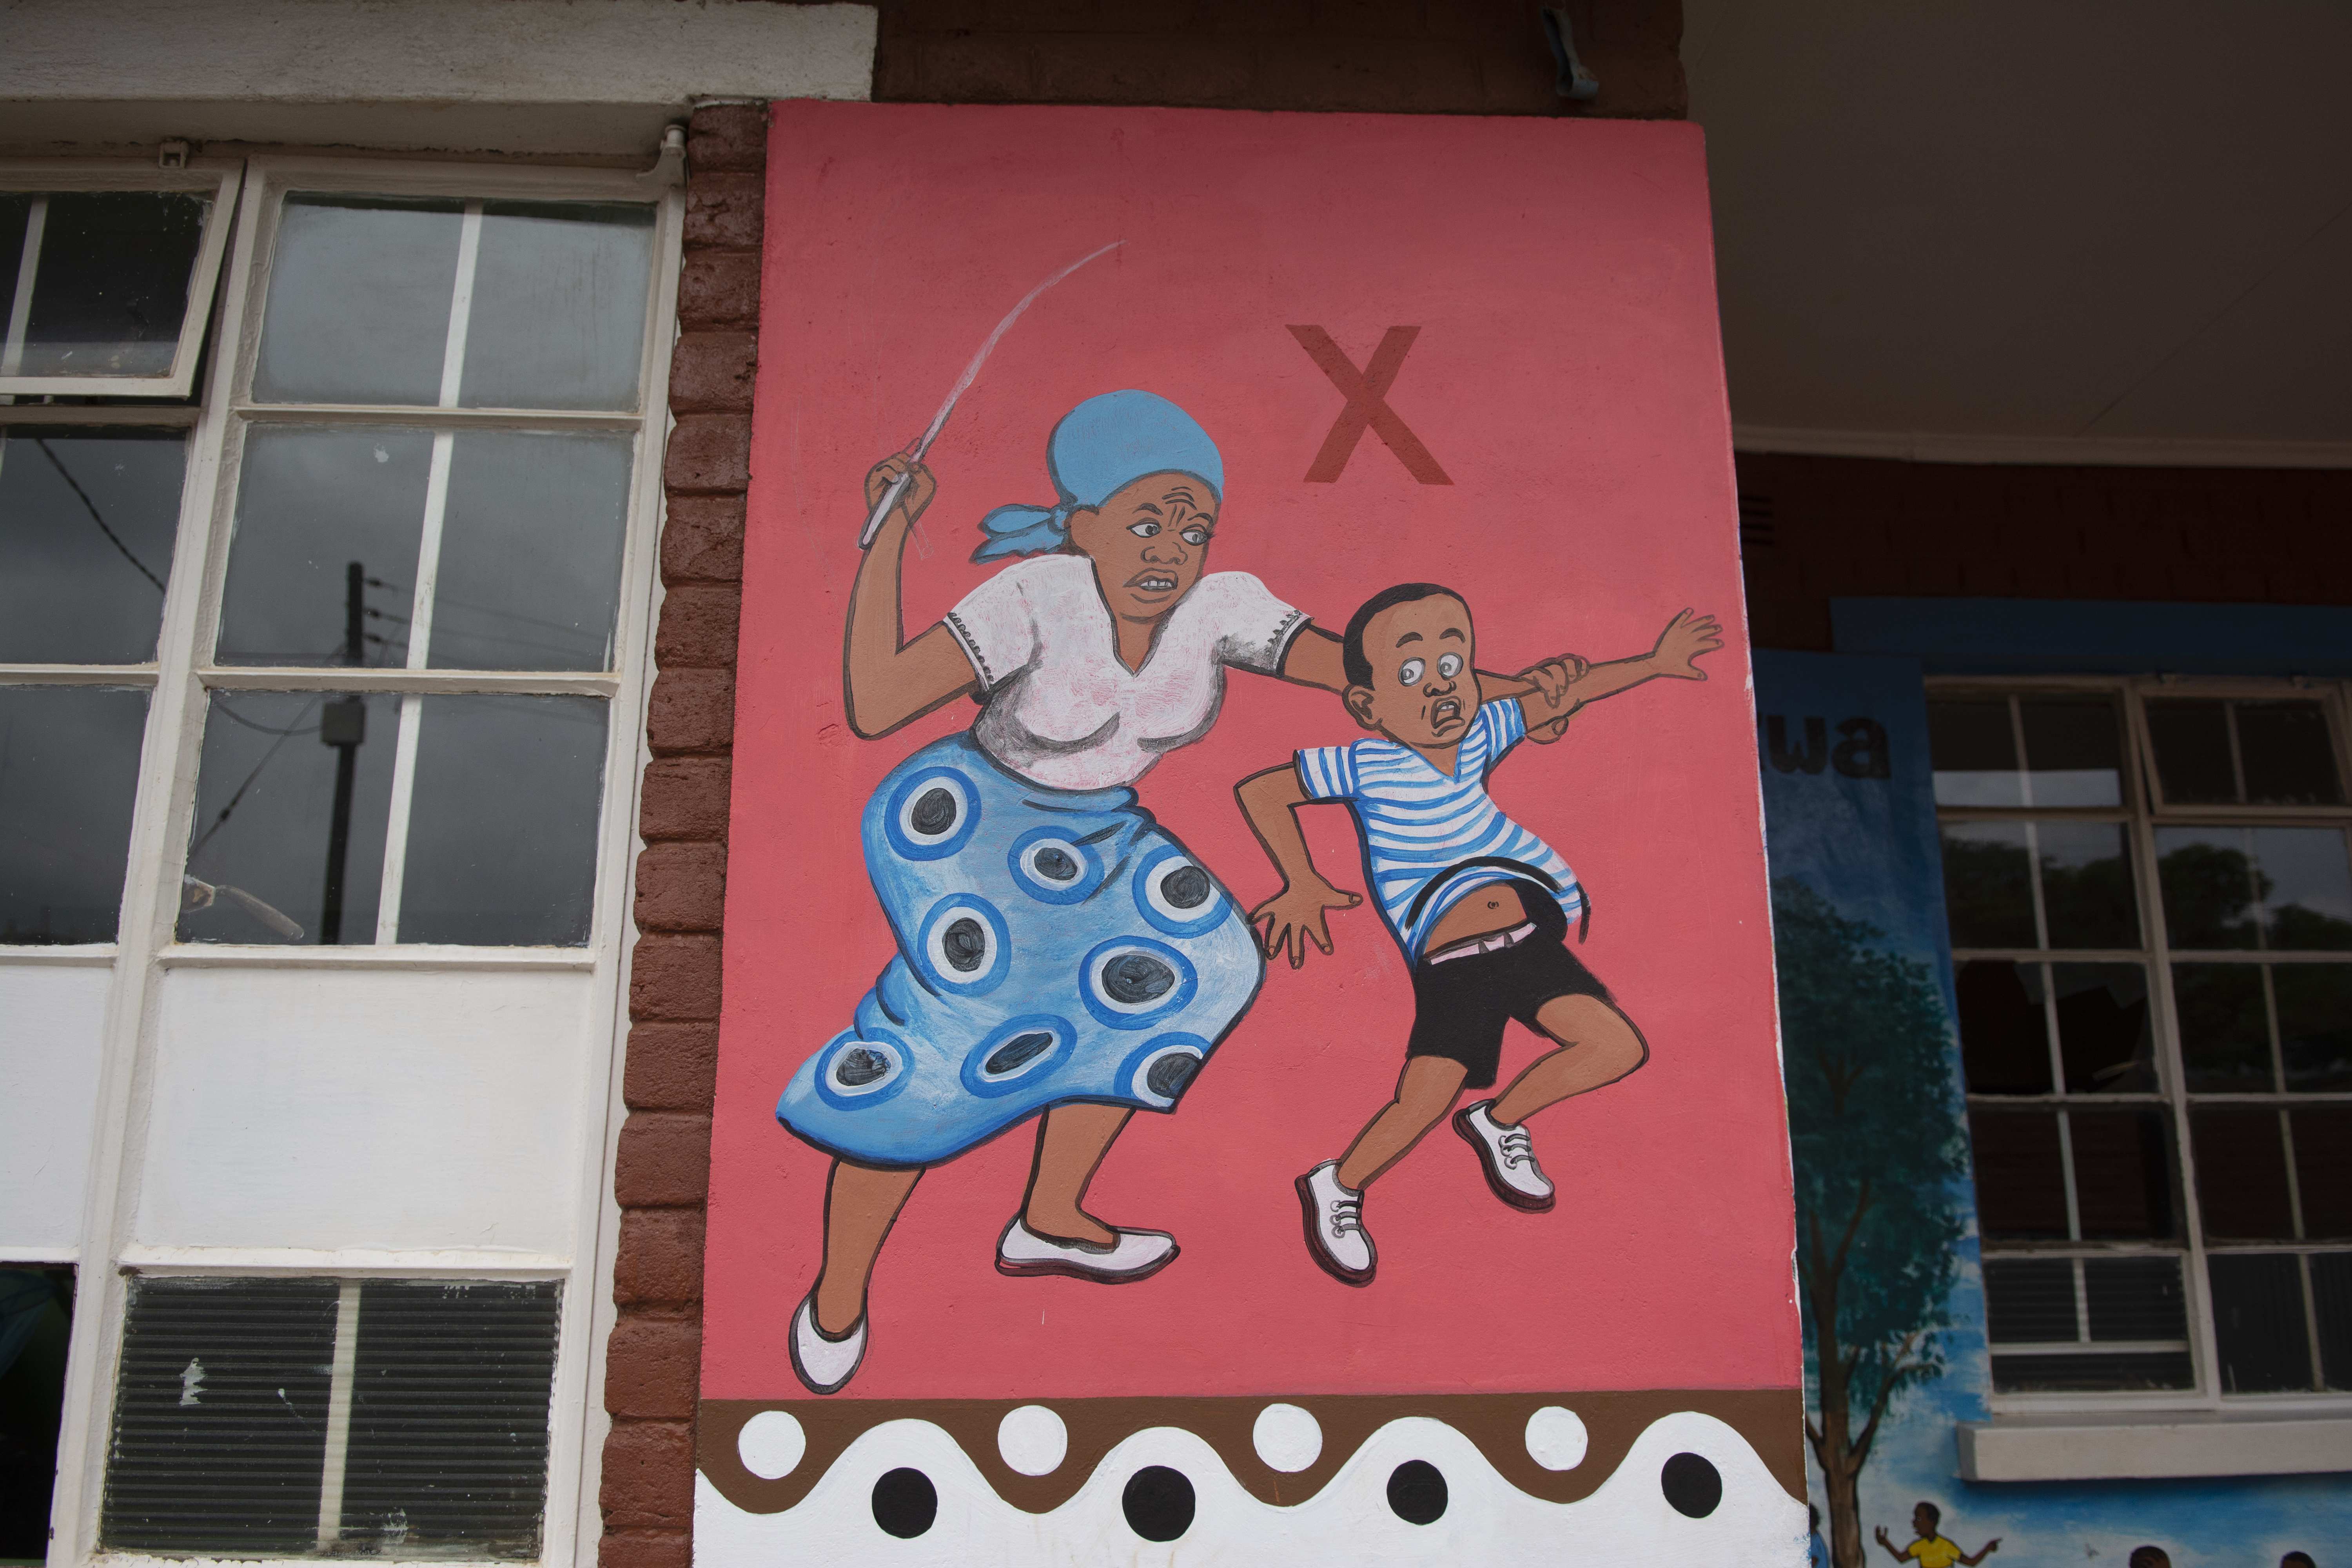 Wandbild im Tikondane-Projekt: Eine Mutter schlägt ihr Kind, und das ist verboten! (Quelle: Christian Nusch)